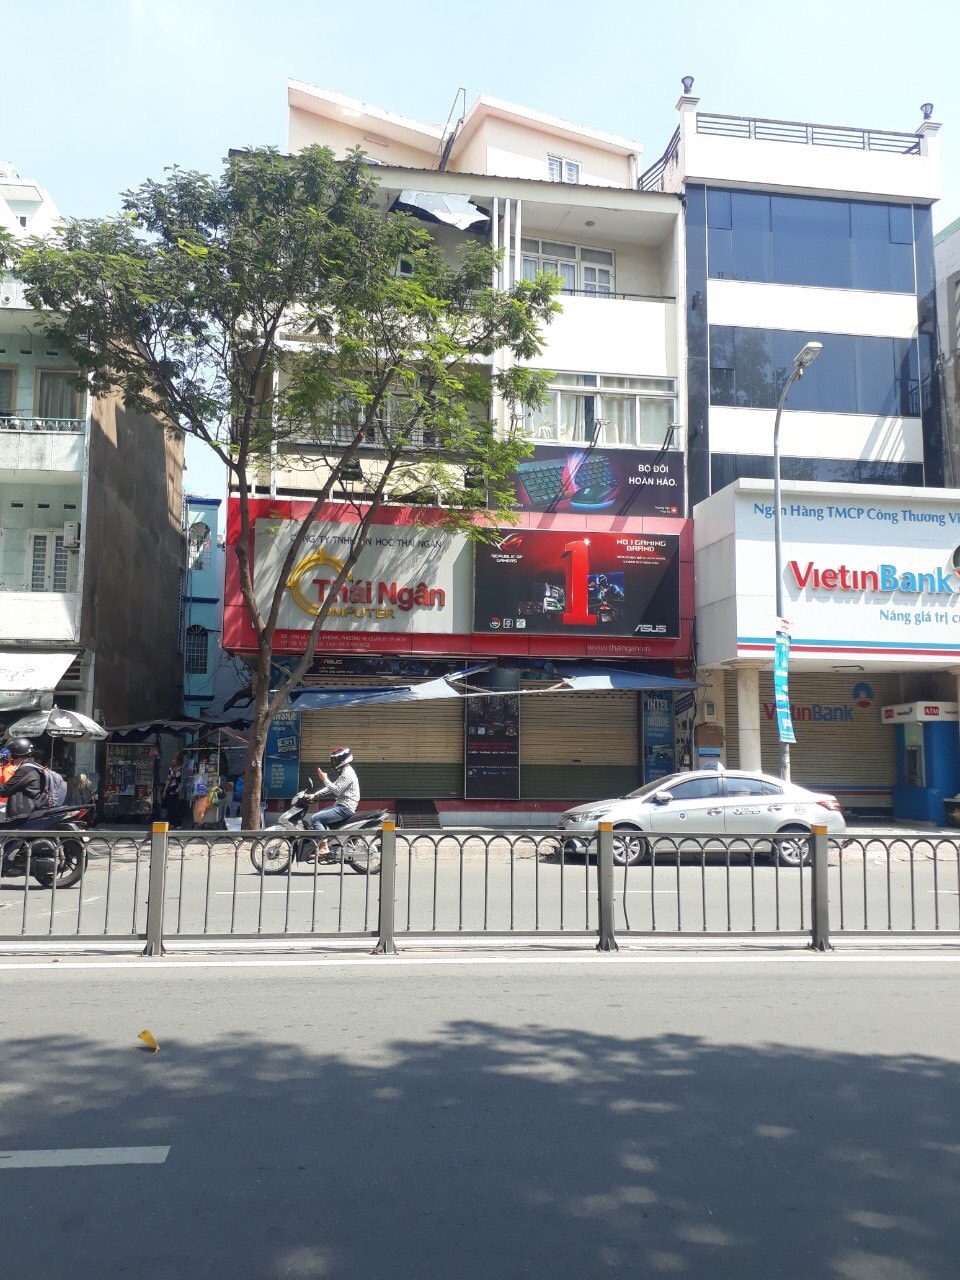 Bán nhà mặt tiền đường Rạch Bùng Binh, Q3.(6.8x10m), 3 lầu cho thuê shop 65tr/th giá 23 tỷ tl